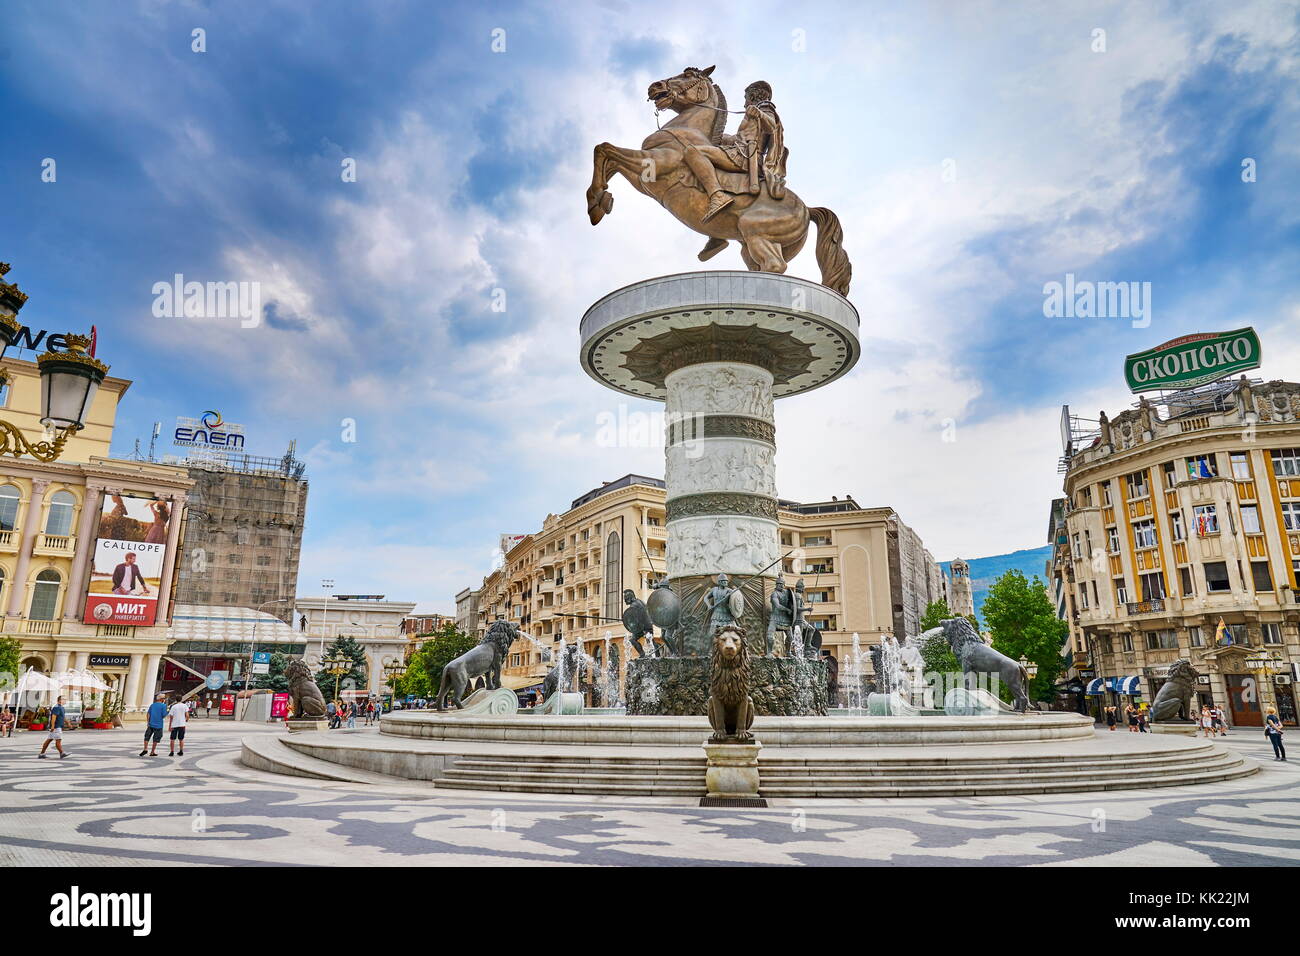 Die Statue Von Alexander Dem Grossen Quadratischen Skopje Mazedonien Republik Mazedonien Stockfotografie Alamy